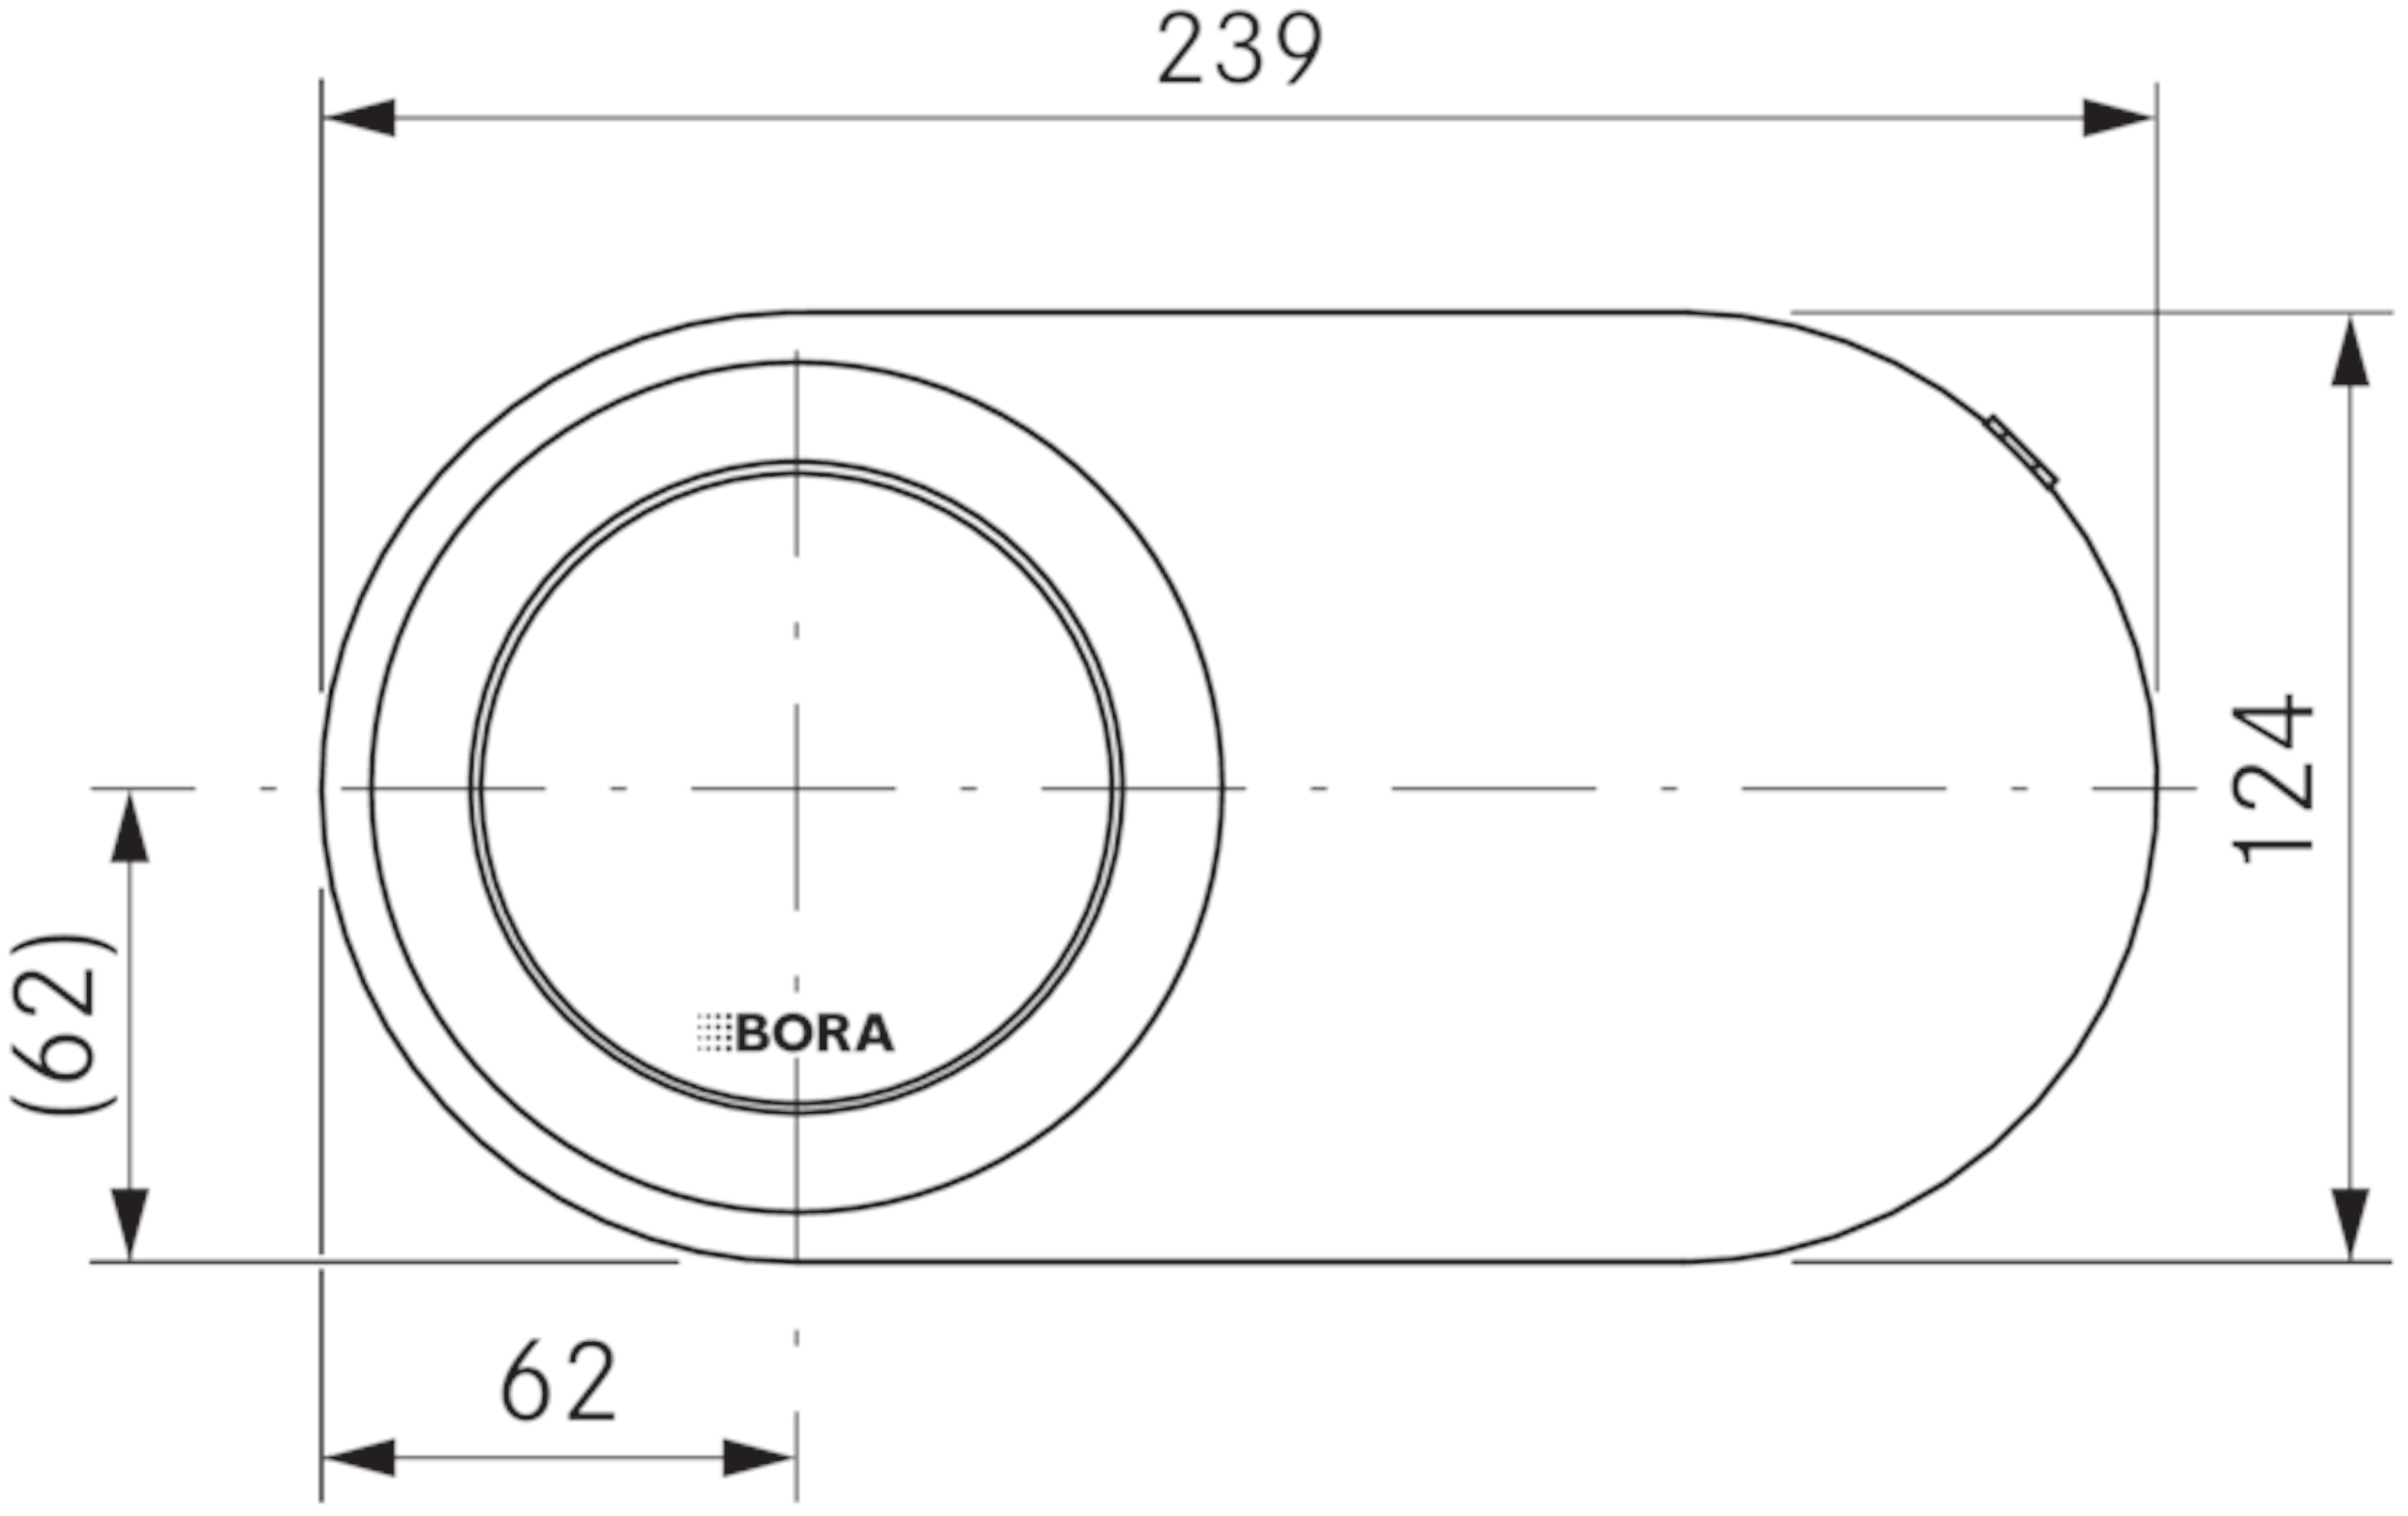 QVACSS van Bora afbeelding 5